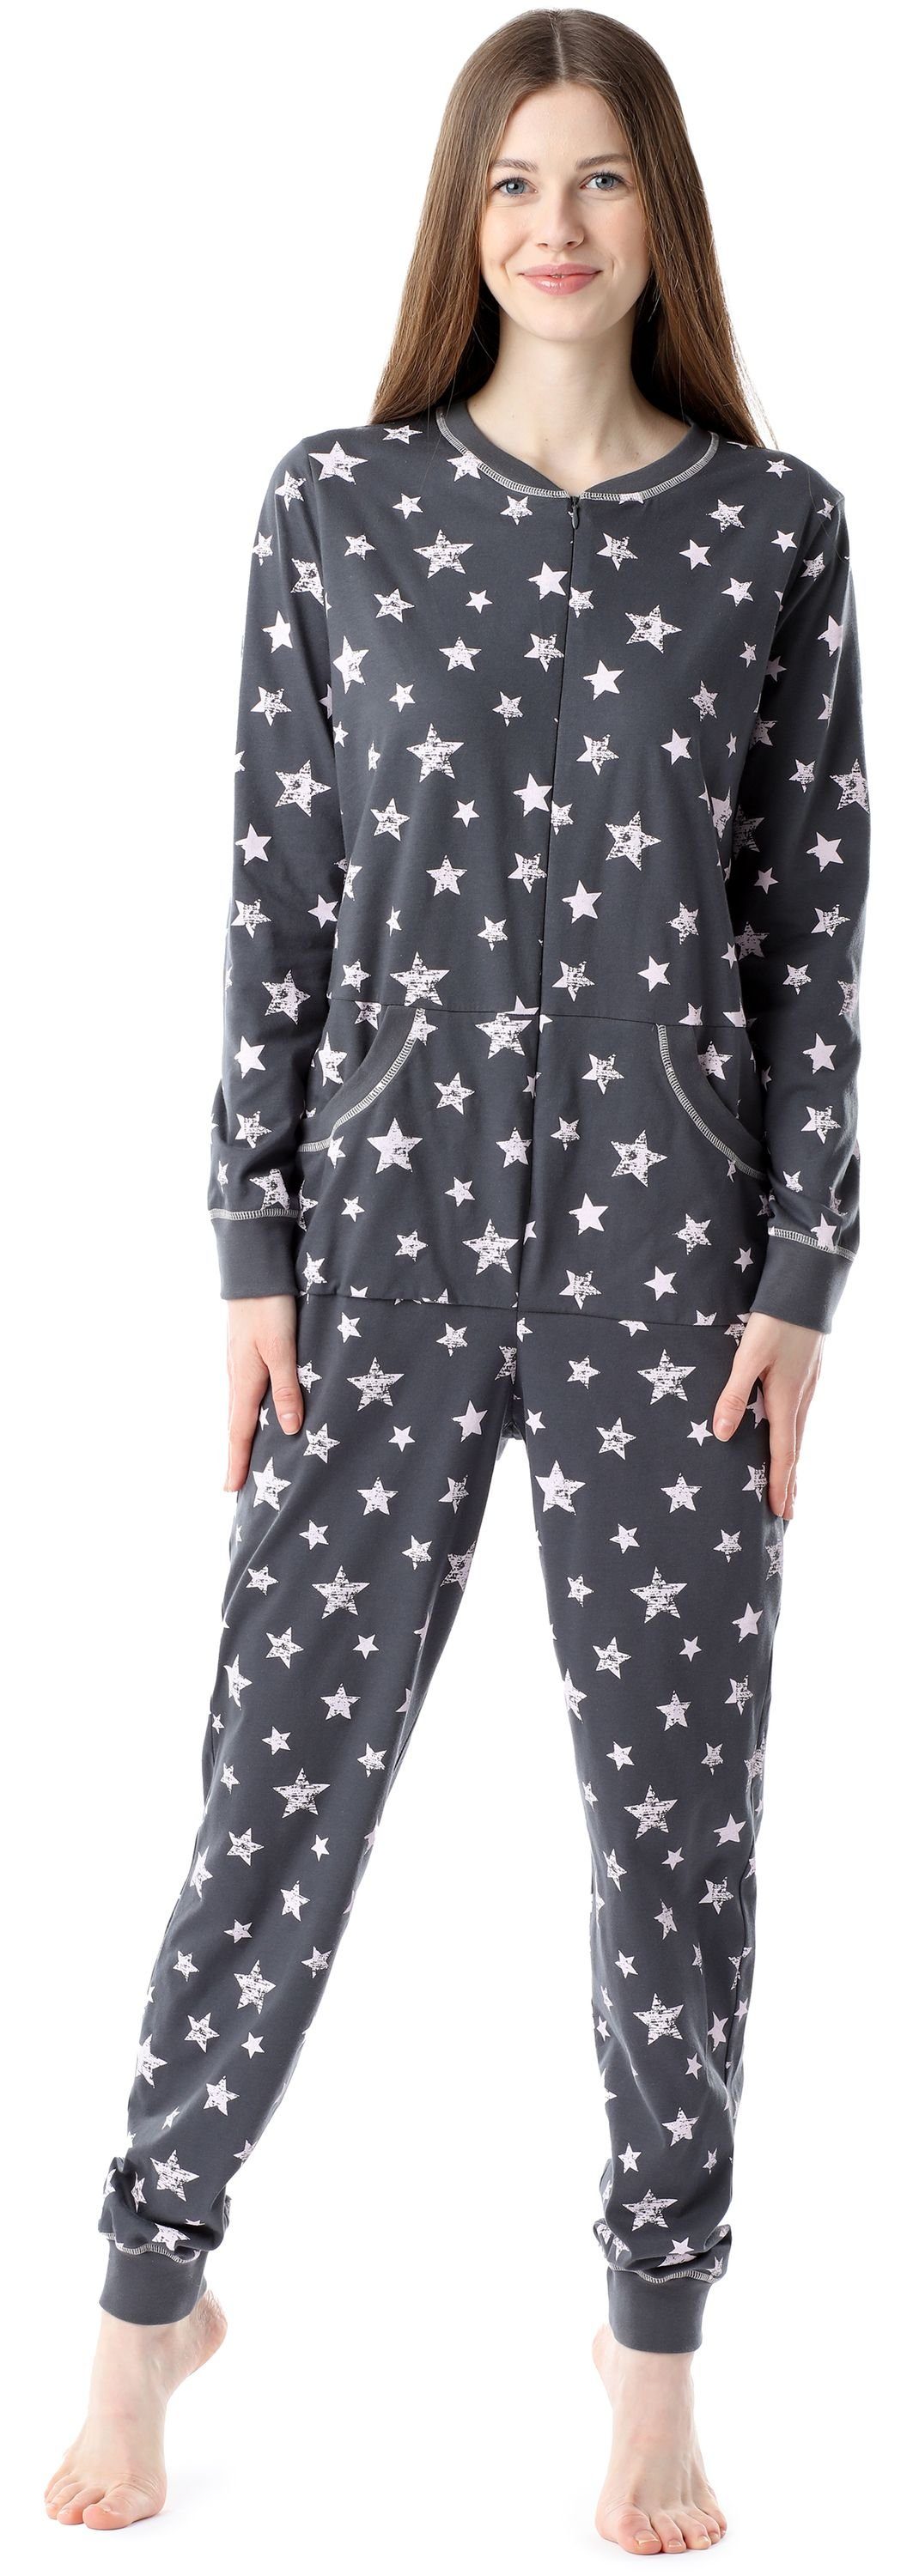 Bellivalini BLV50-206 Damen Sterne Schlafanzug Schlafoverall Pyjama Graphite/Rosa